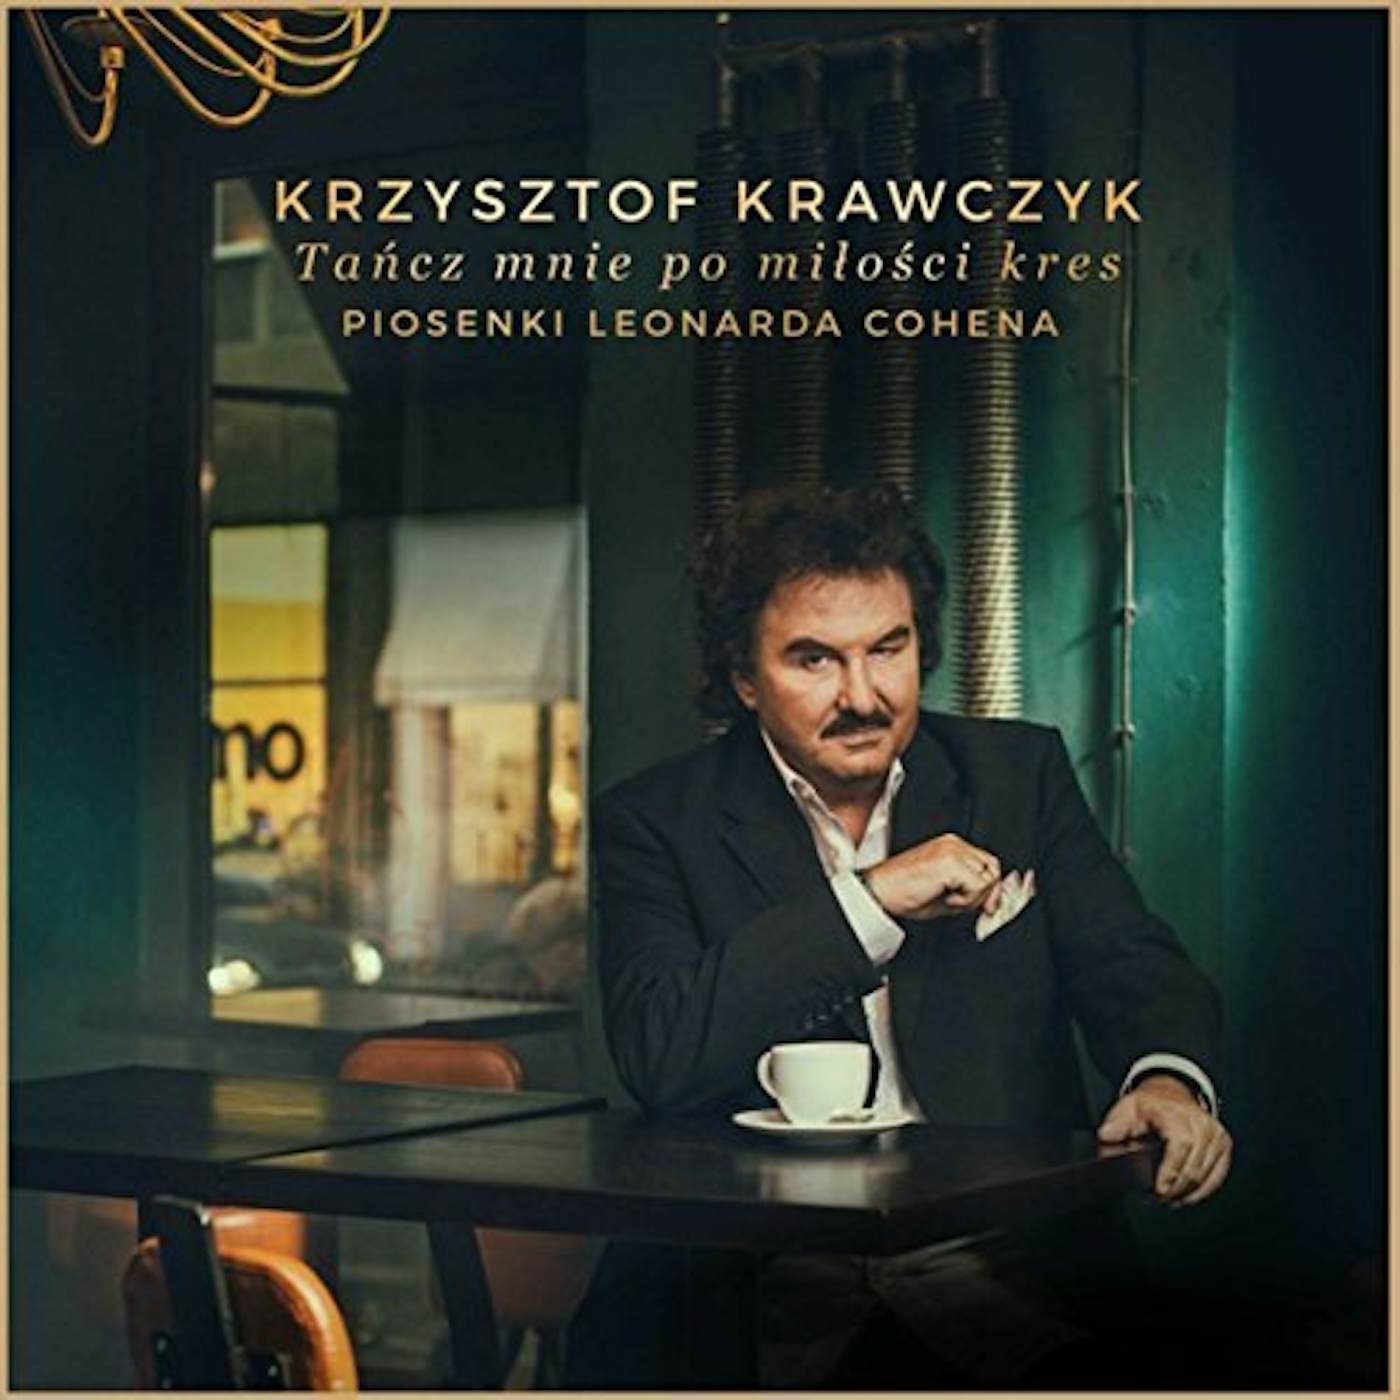 Krzysztof Krawczyk TANCZ MNIE PO MILOSCI KRES. PIOSENKI LEO CD